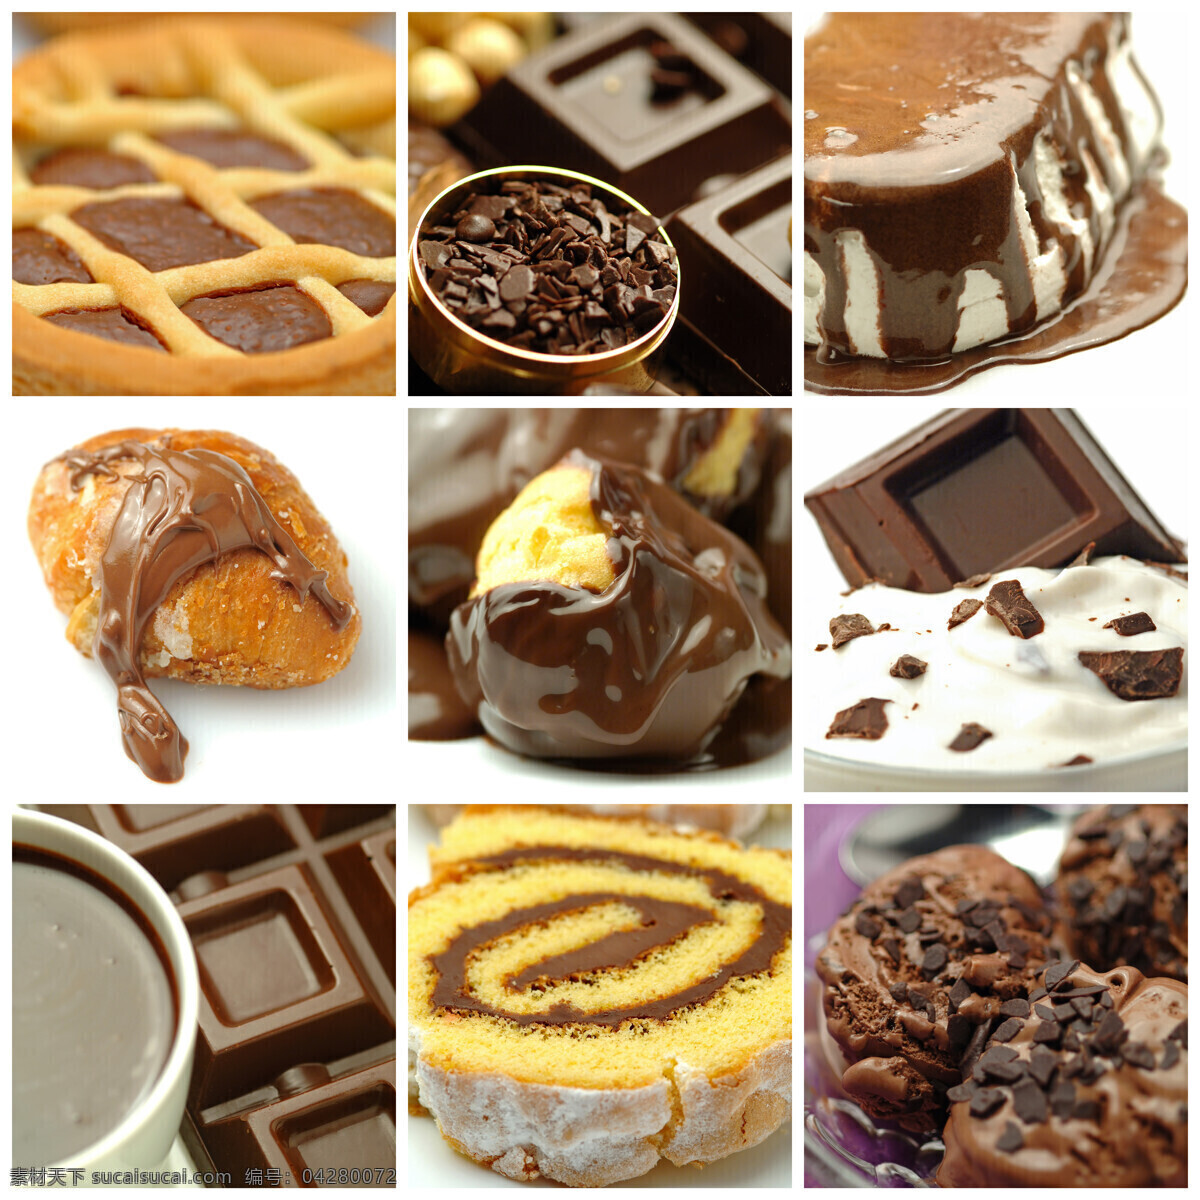 甜品 拼图 巧克力 蛋糕 奶油 食物 零食 甜点 其他类别 生活百科